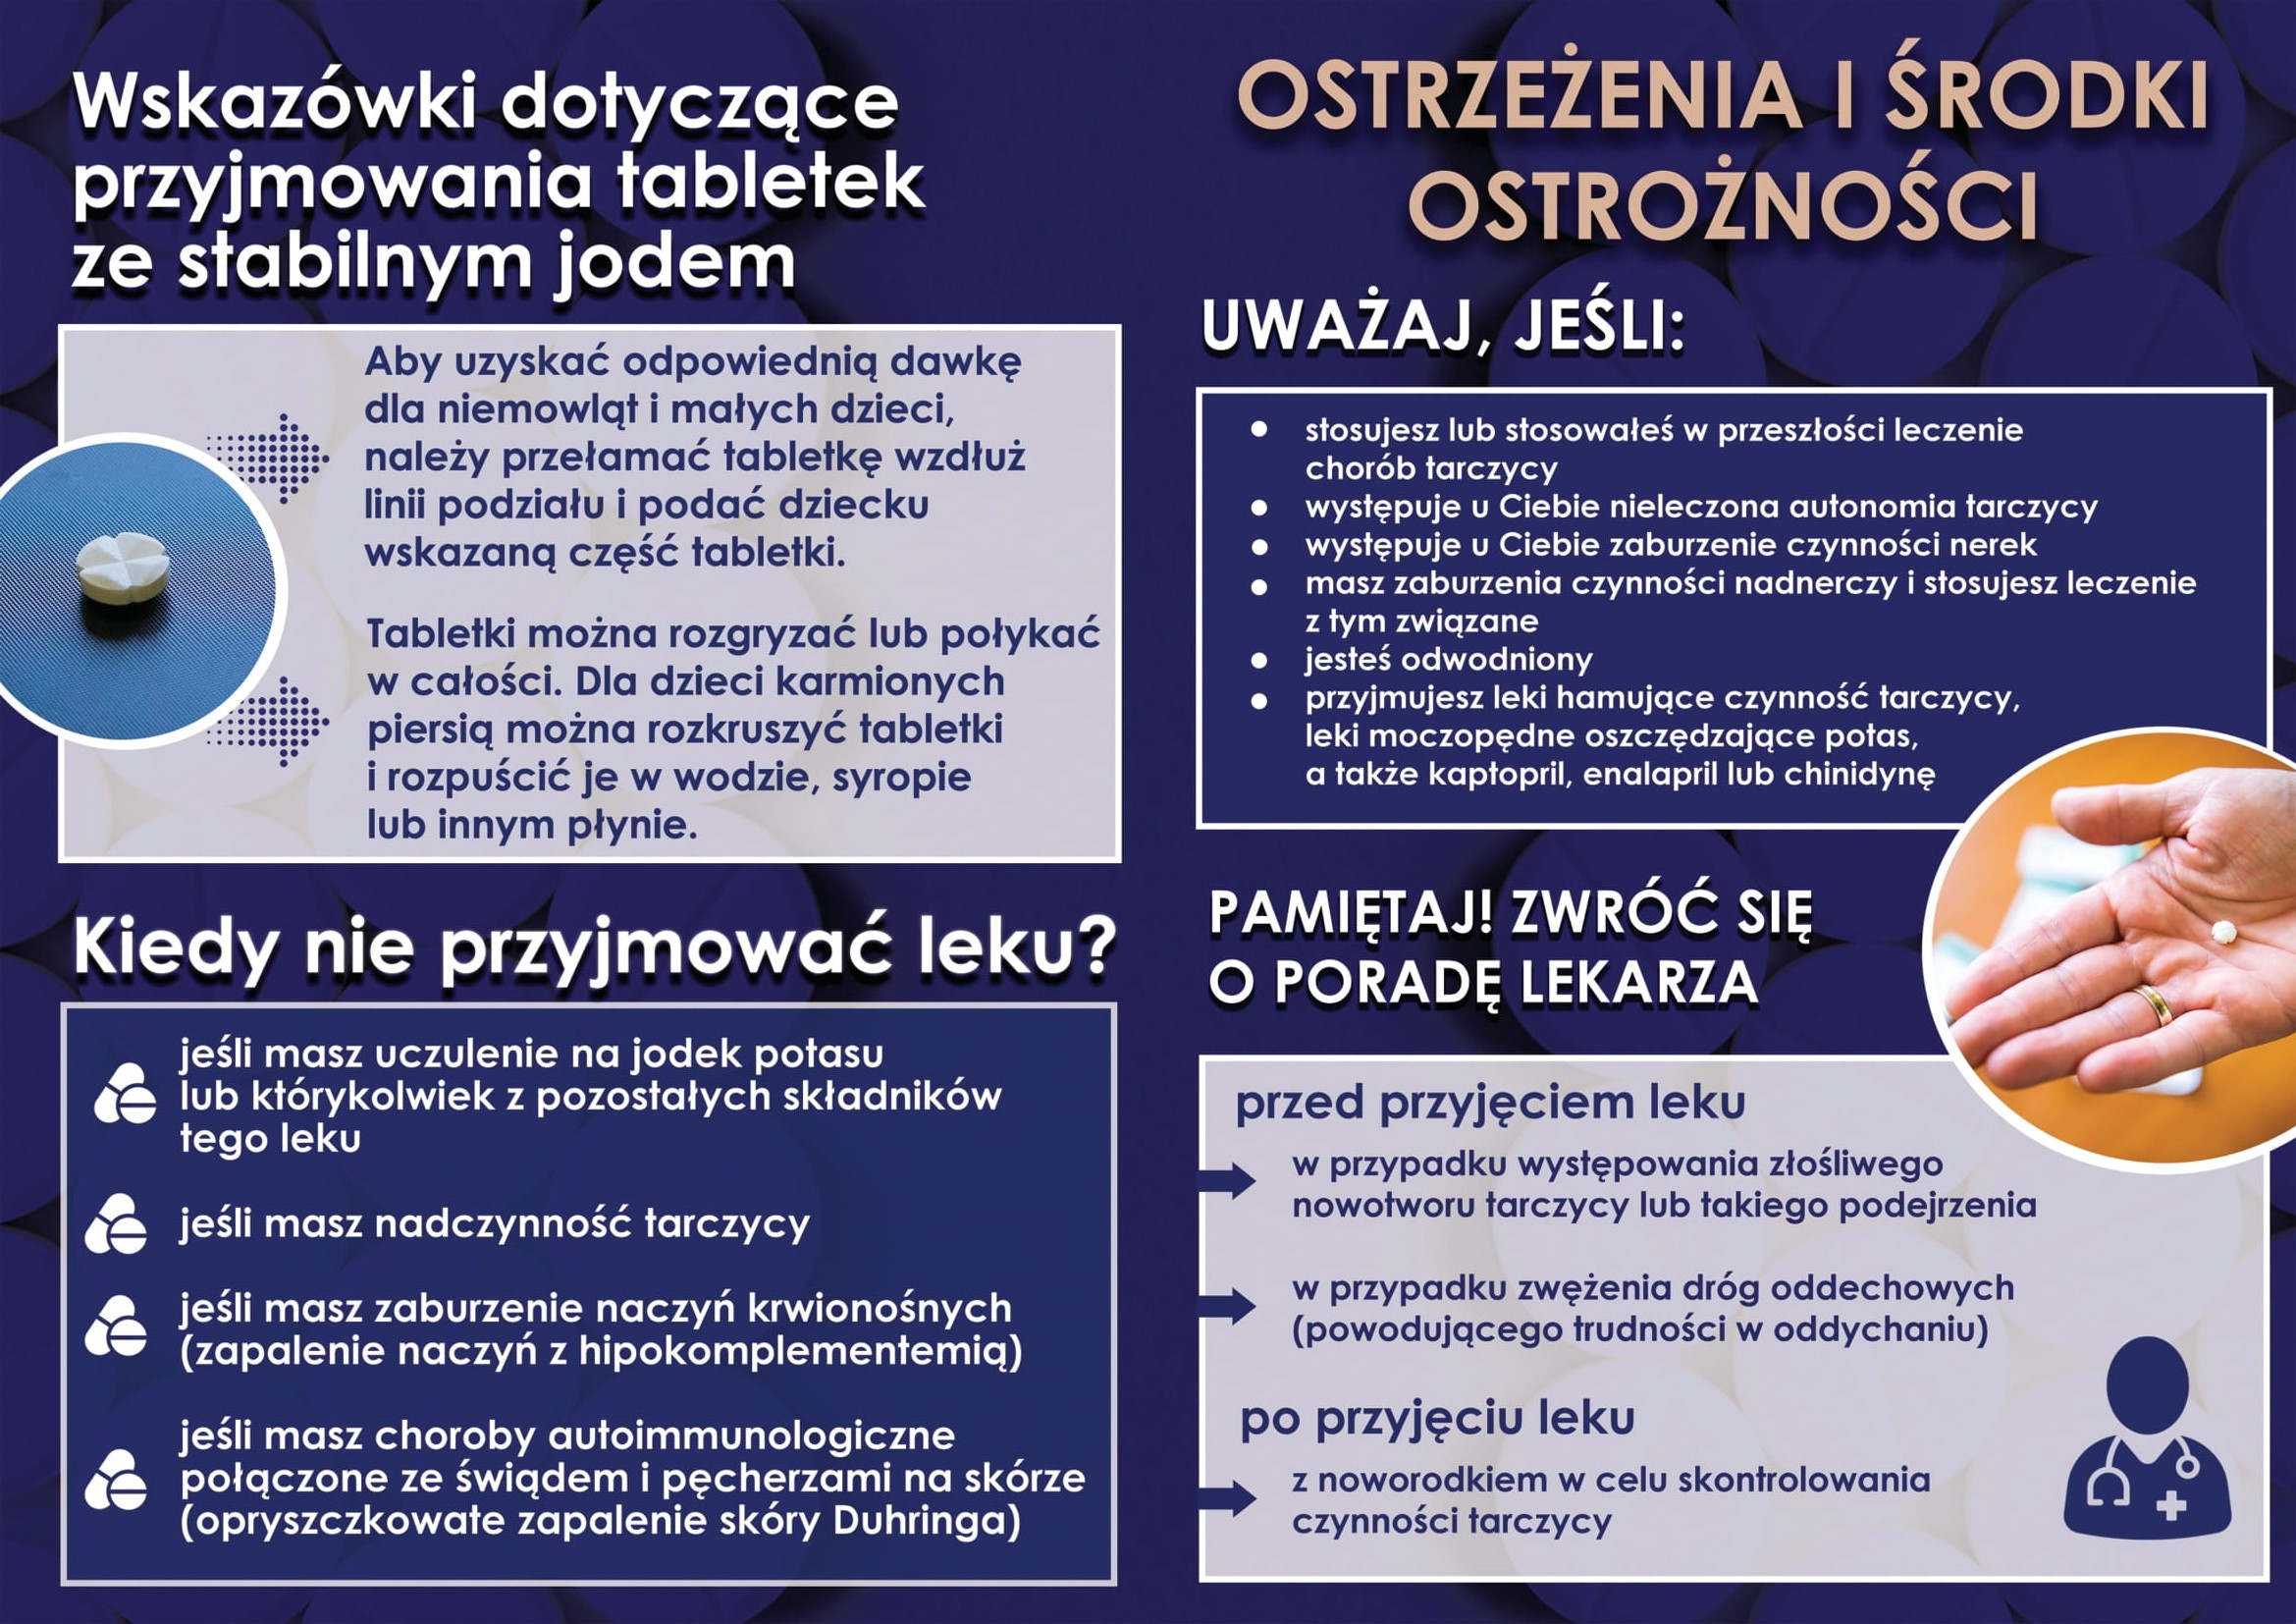 Plakat informacyjny związany z dystrybucją preparatu ze stabilnym jodem